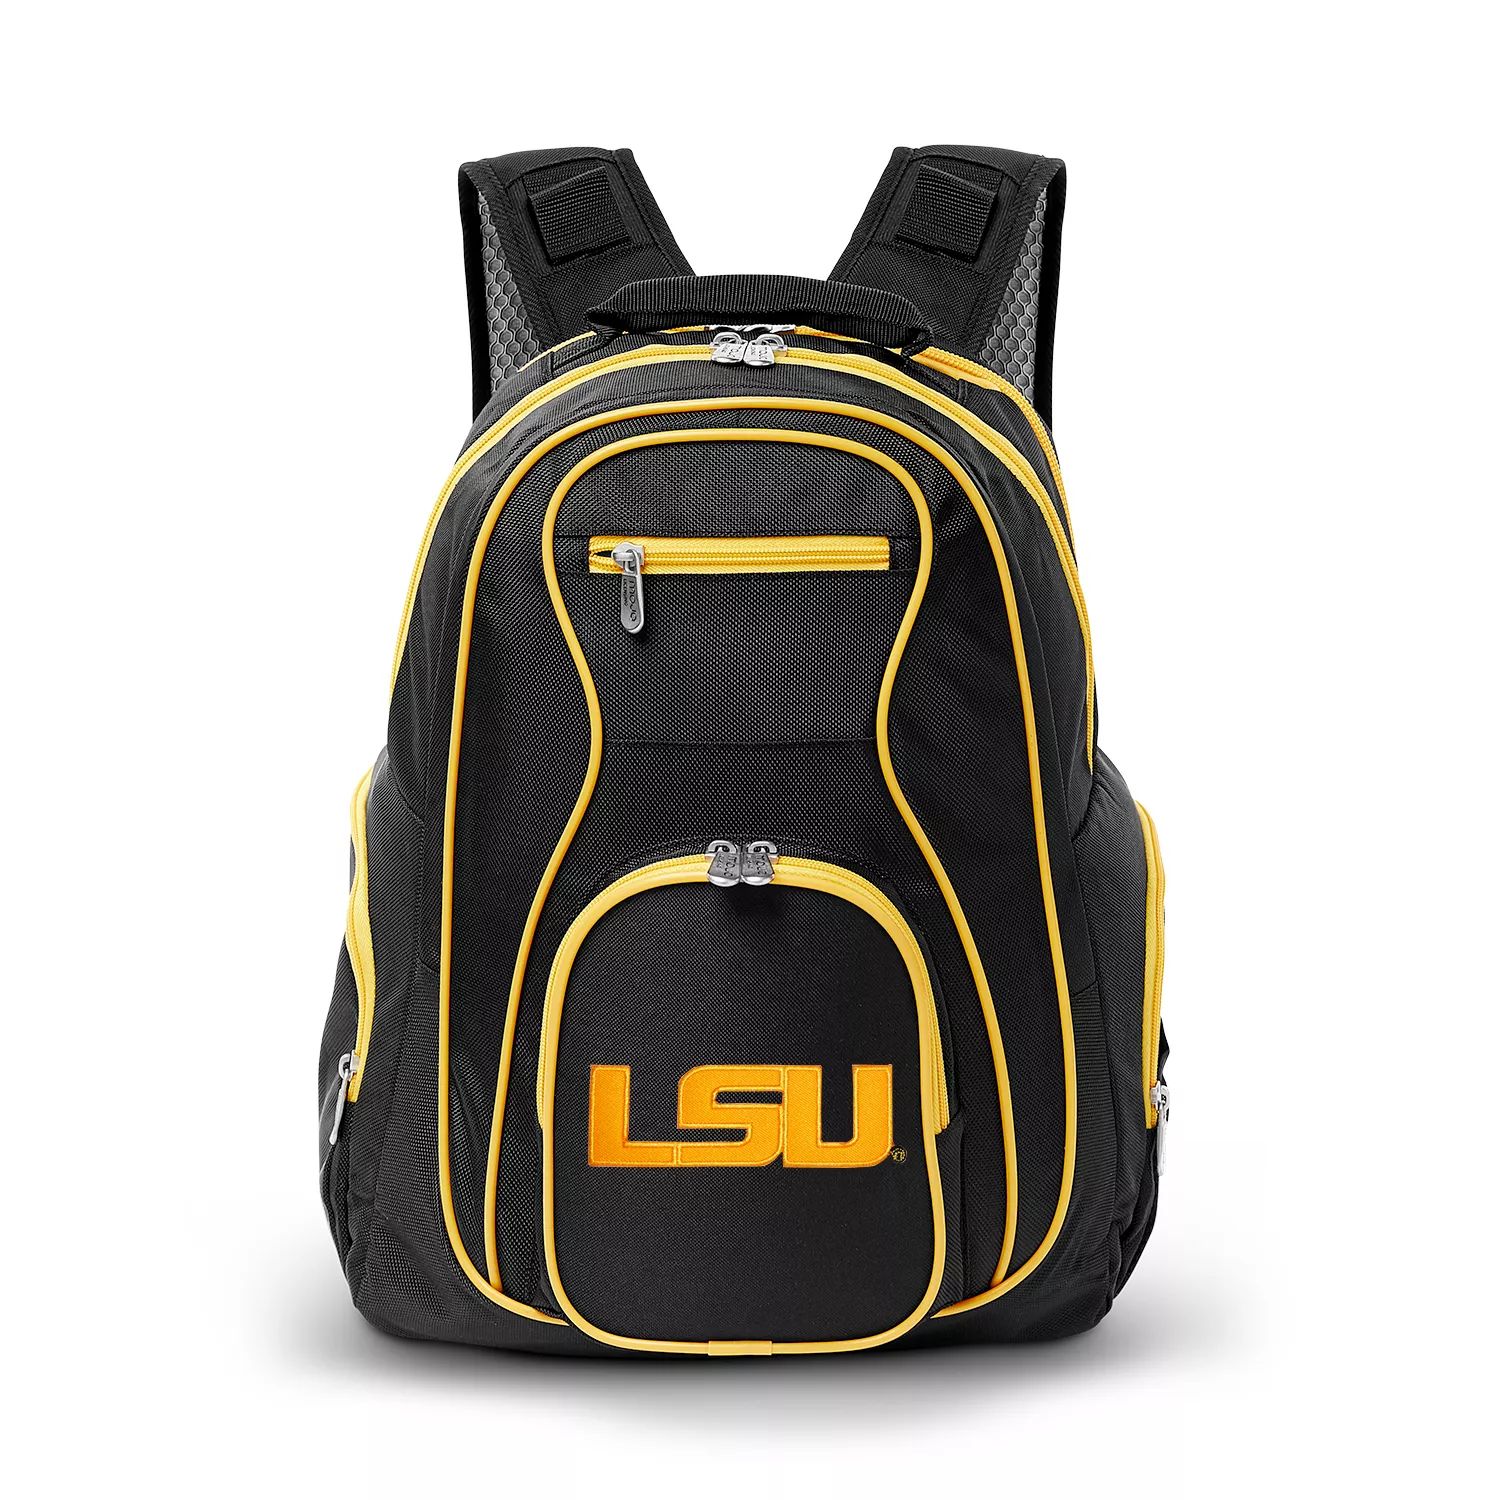 Рюкзак для ноутбука LSU Tigers рюкзак для ноутбука премиум класса lsu tigers